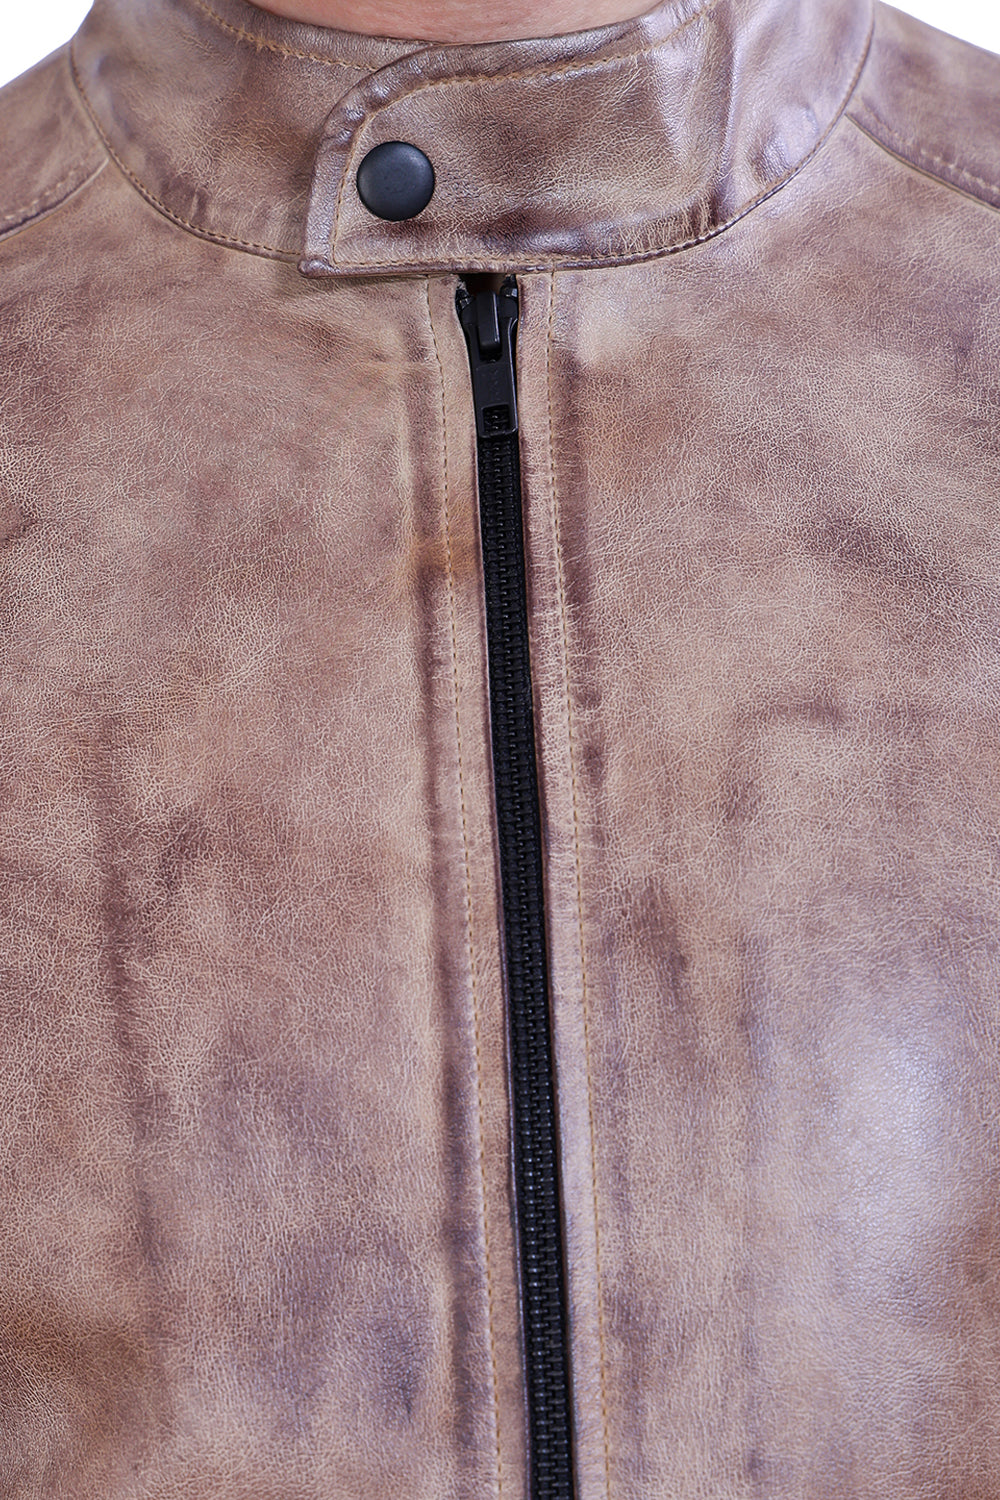 Justanned Stoneswash Leather Jacket